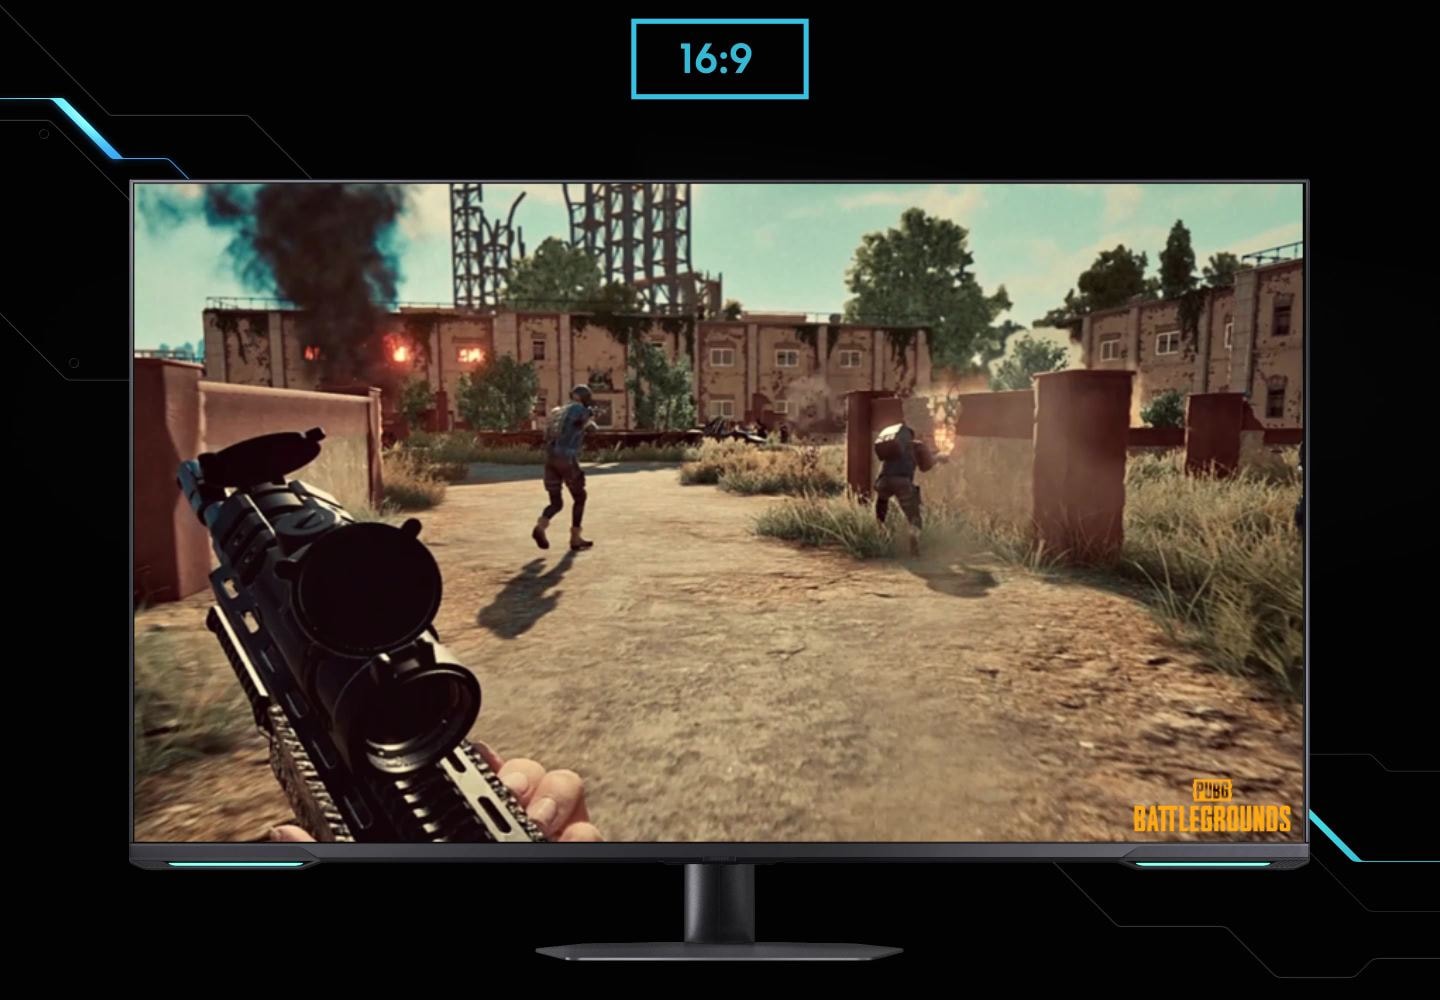 Монитор показывает вид от лица игрока в шутере. По мере расширения экрана с соотношения 16:9 до 21:9 в левом углу появляется невидимый враг. В правом нижнем углу экрана виден логотип "Battleground".